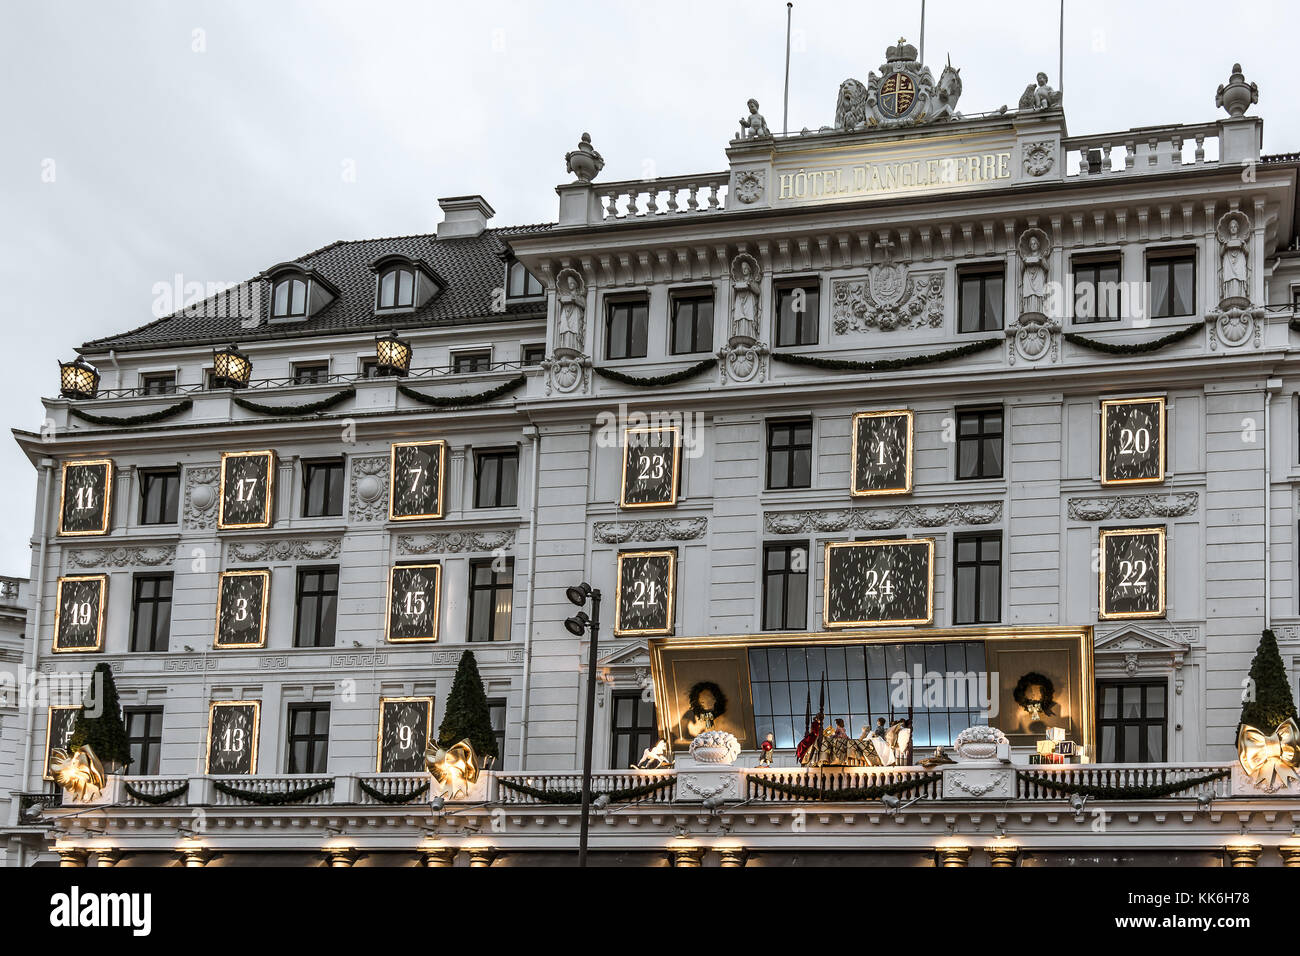 Facciata dell'Hotel d'Angleterre a Copenhagen, con decorazioni di Natale, Danimarca, 28 novembre 2017 Foto Stock